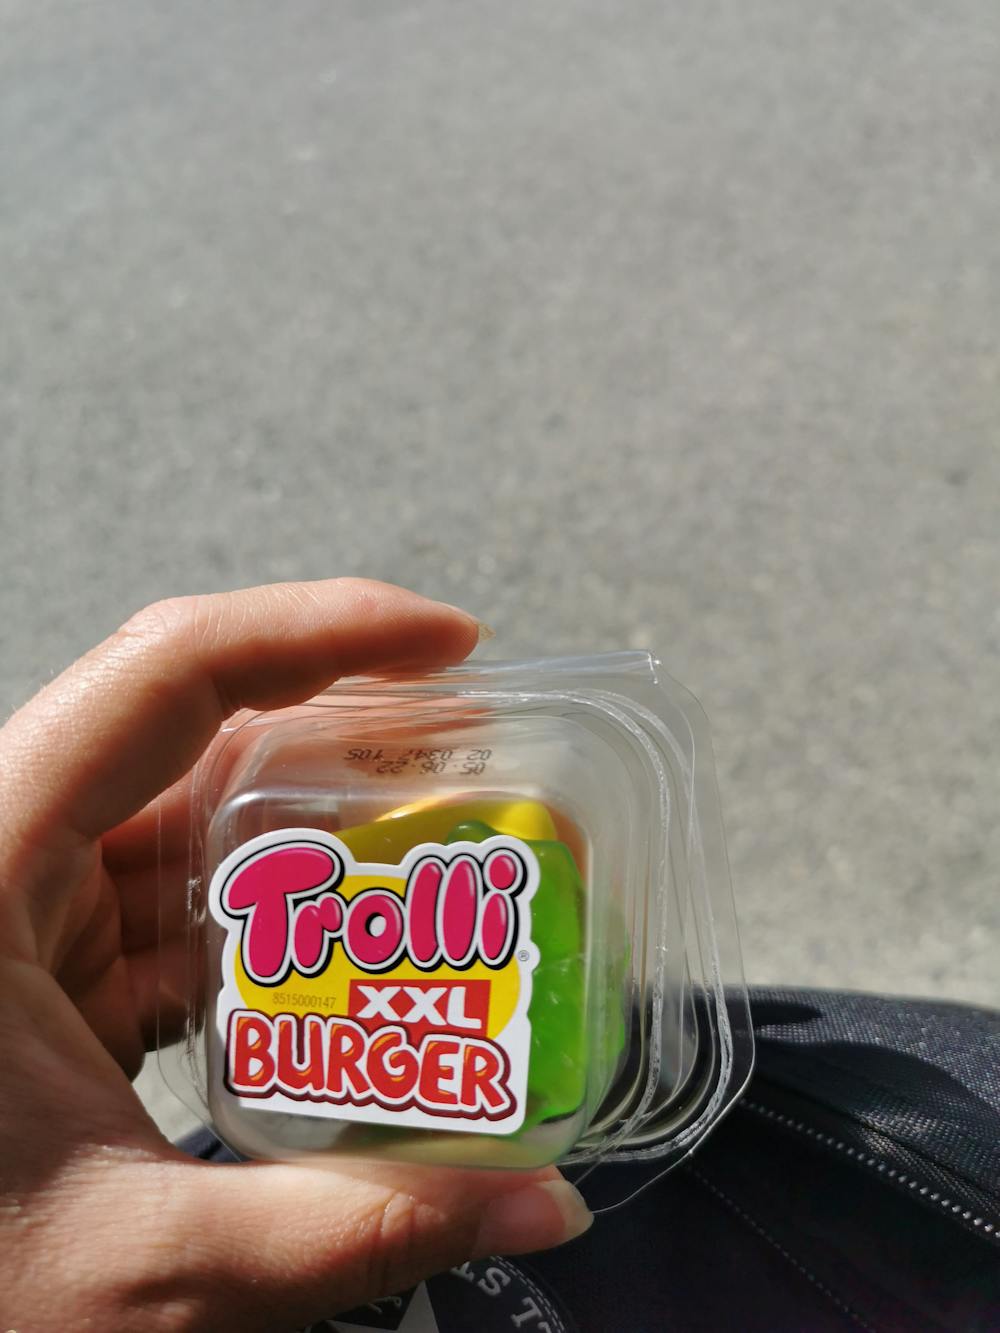 XXL burger, Trolli